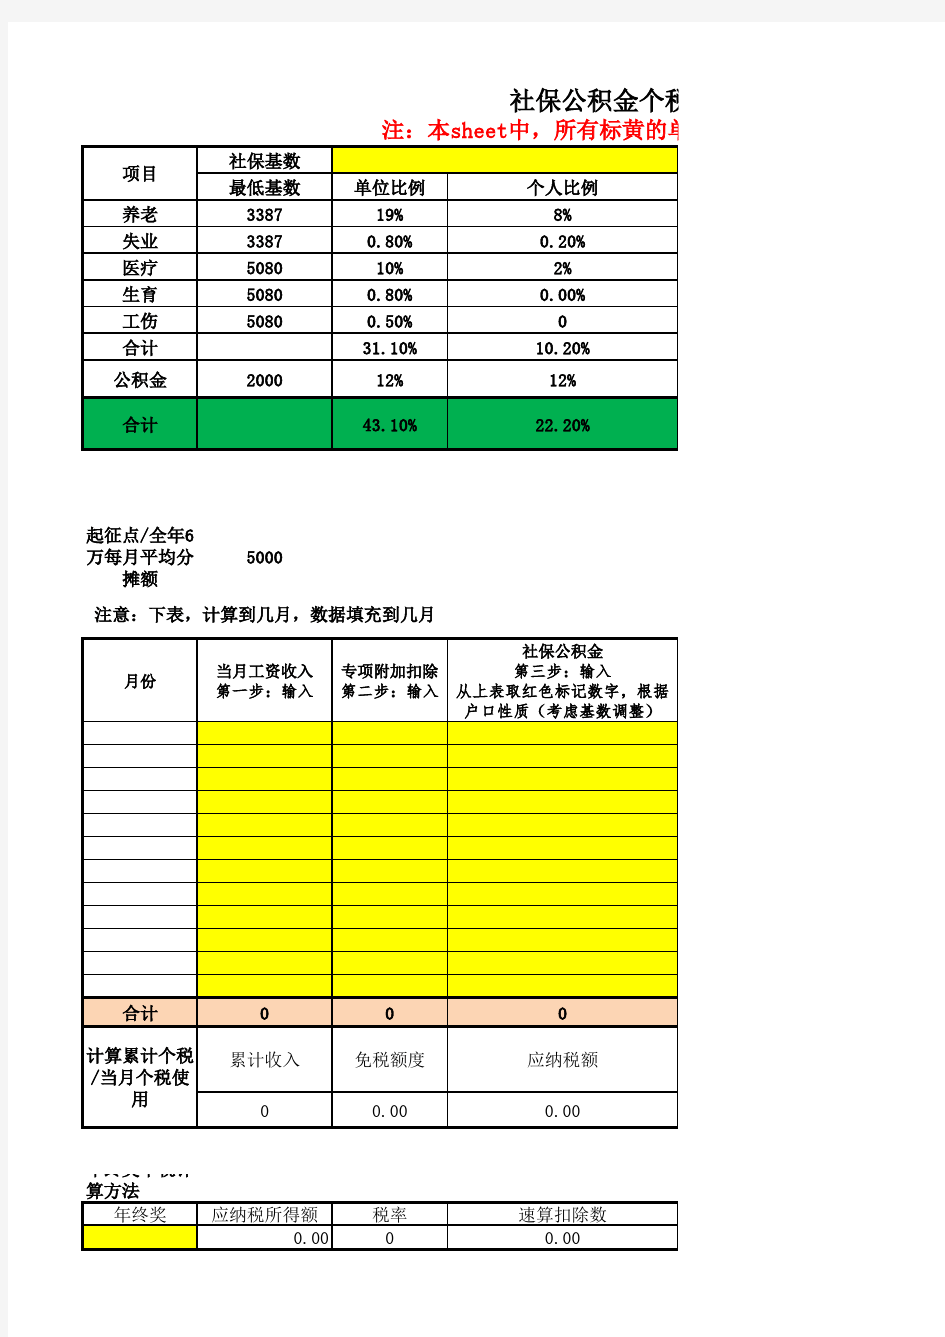 2019年1月1日后北京社保公积金个税计算表